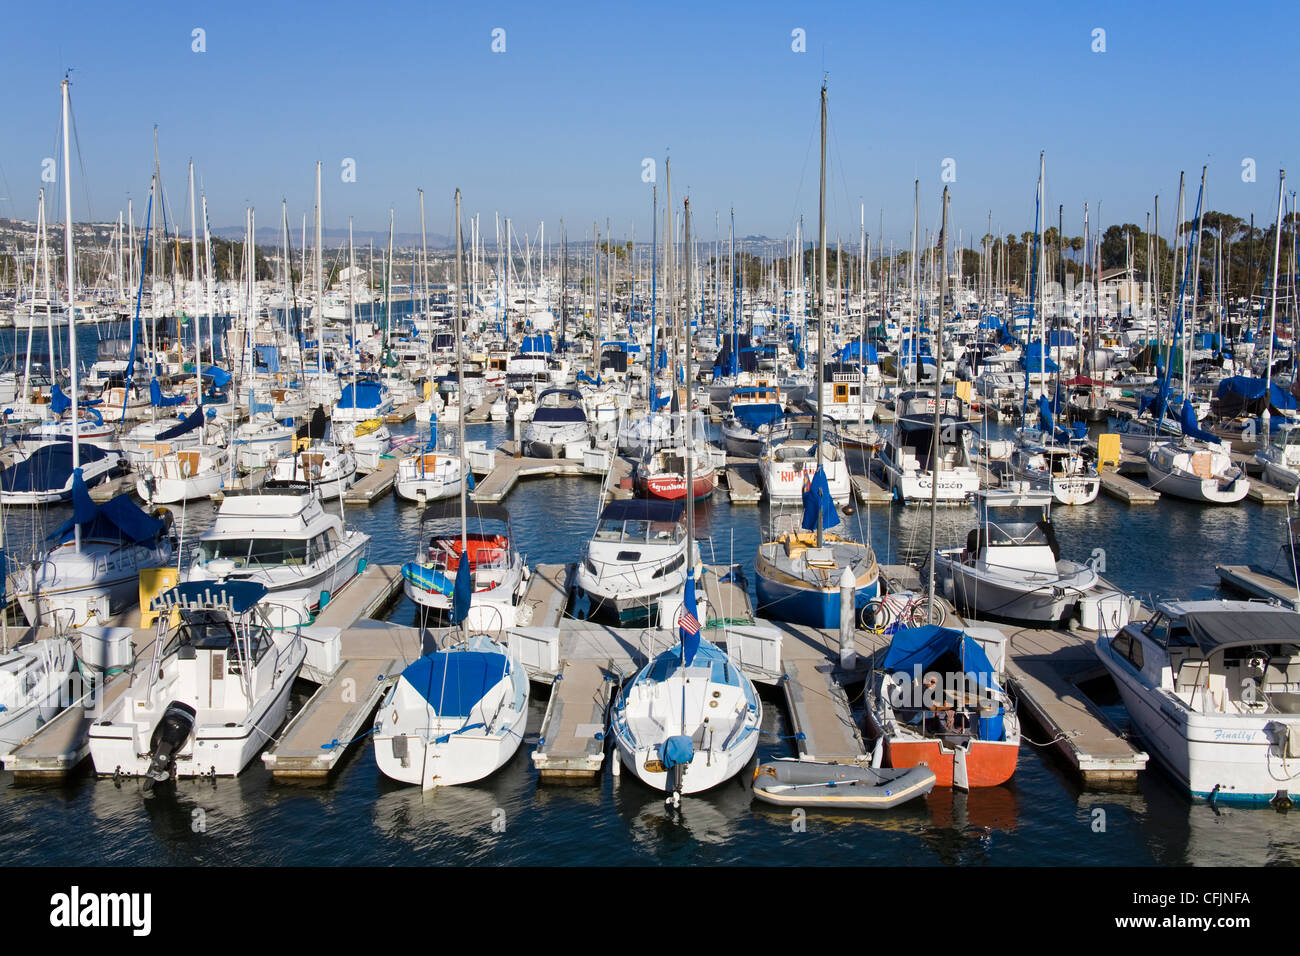 Marina à Dana Point Harbor, Orange County, Californie, États-Unis d'Amérique, Amérique du Nord Banque D'Images